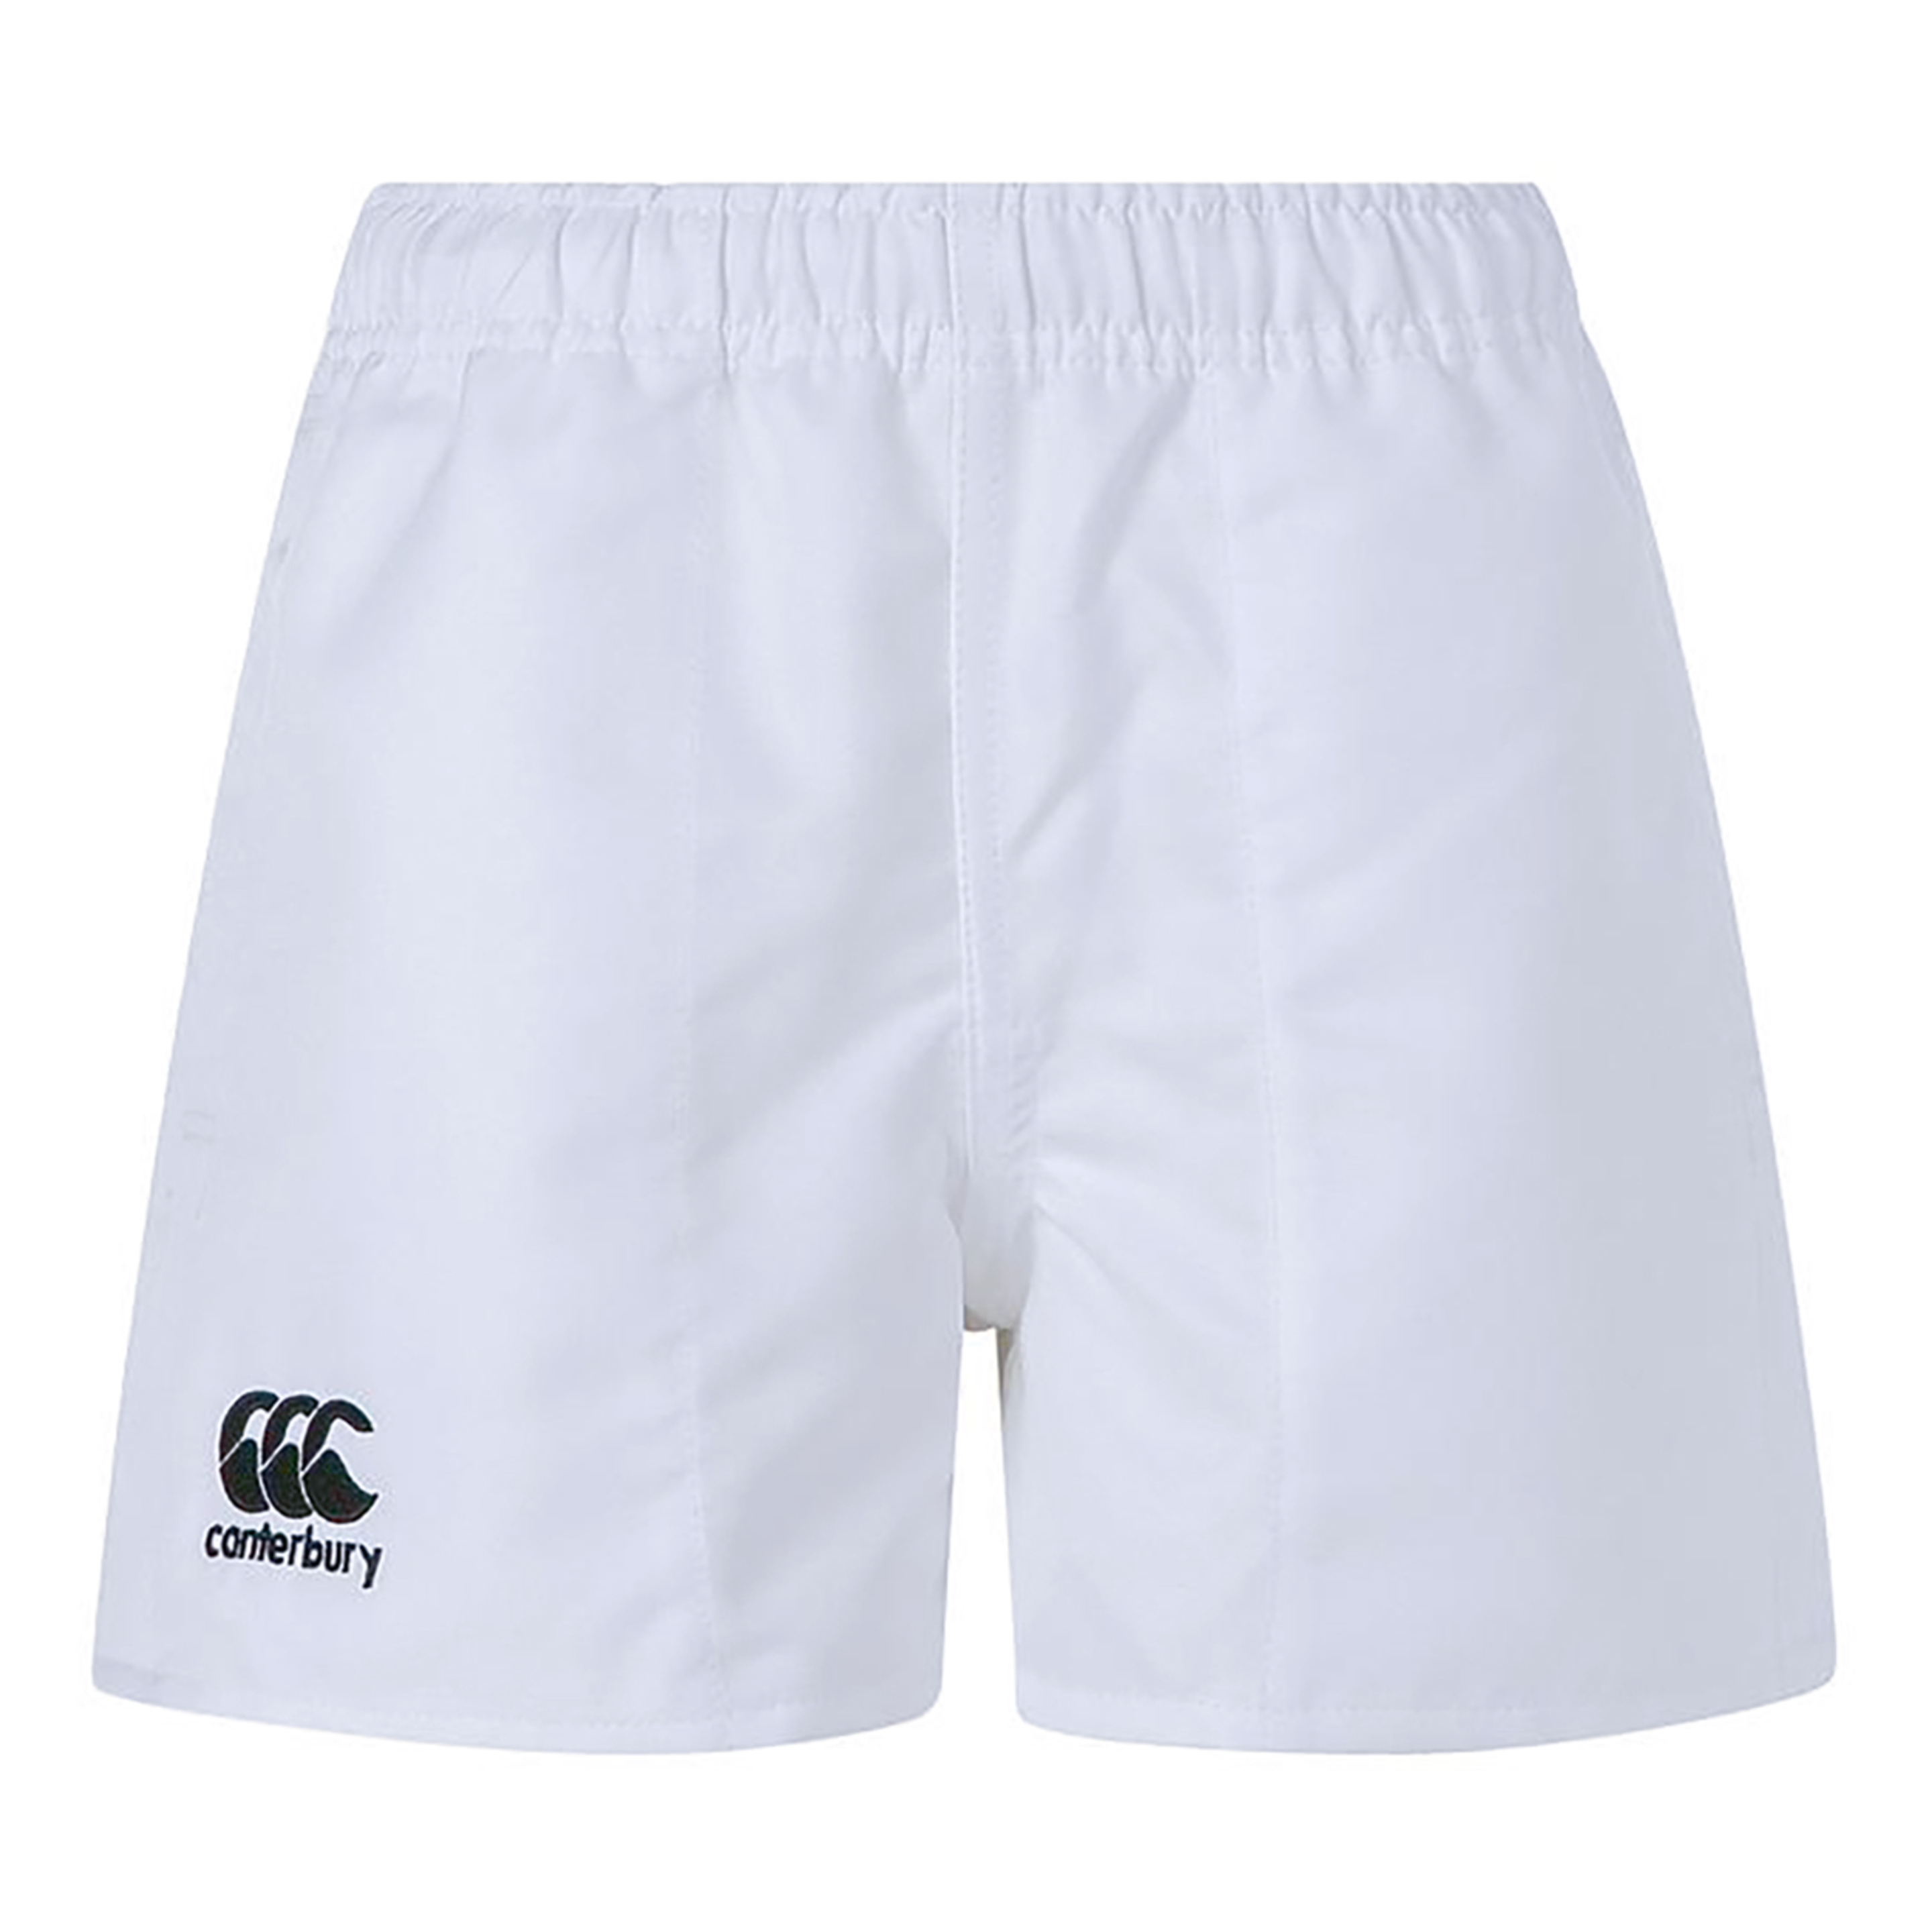 Shorts Estilo Rugby Canterbury - Blanco  MKP